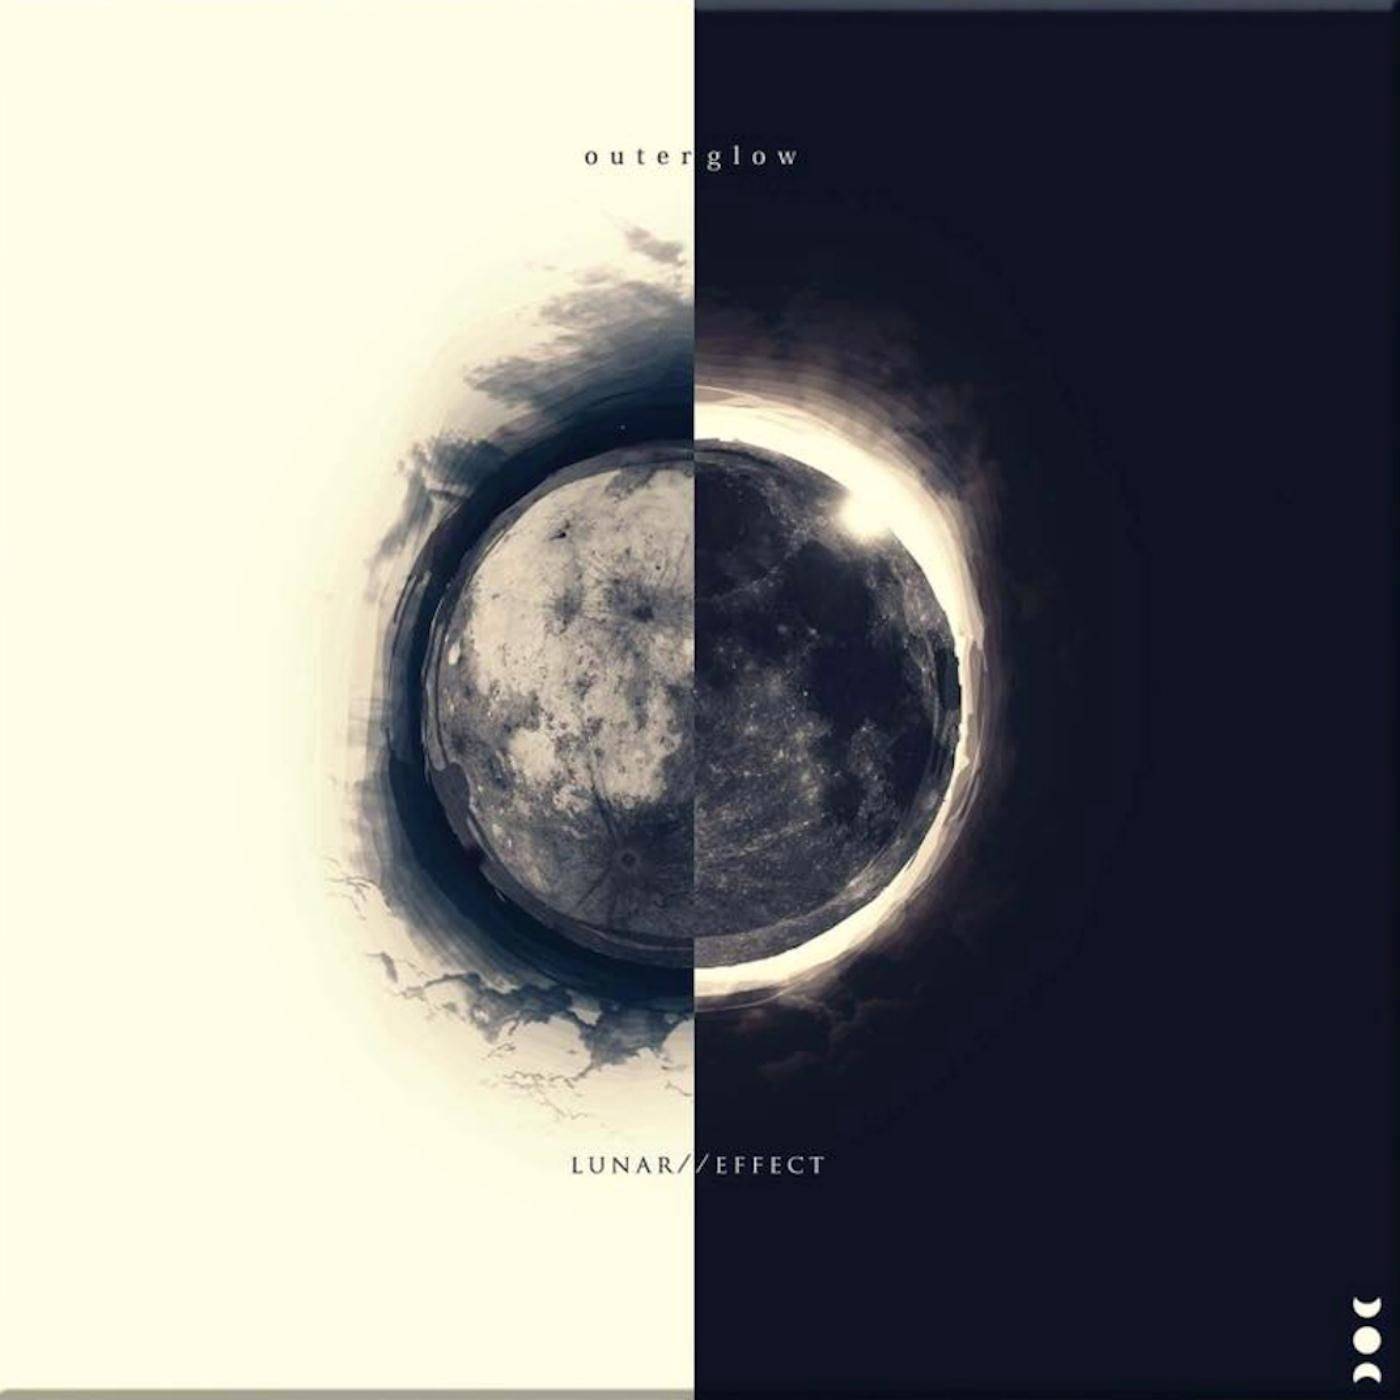 Lunar // Effect